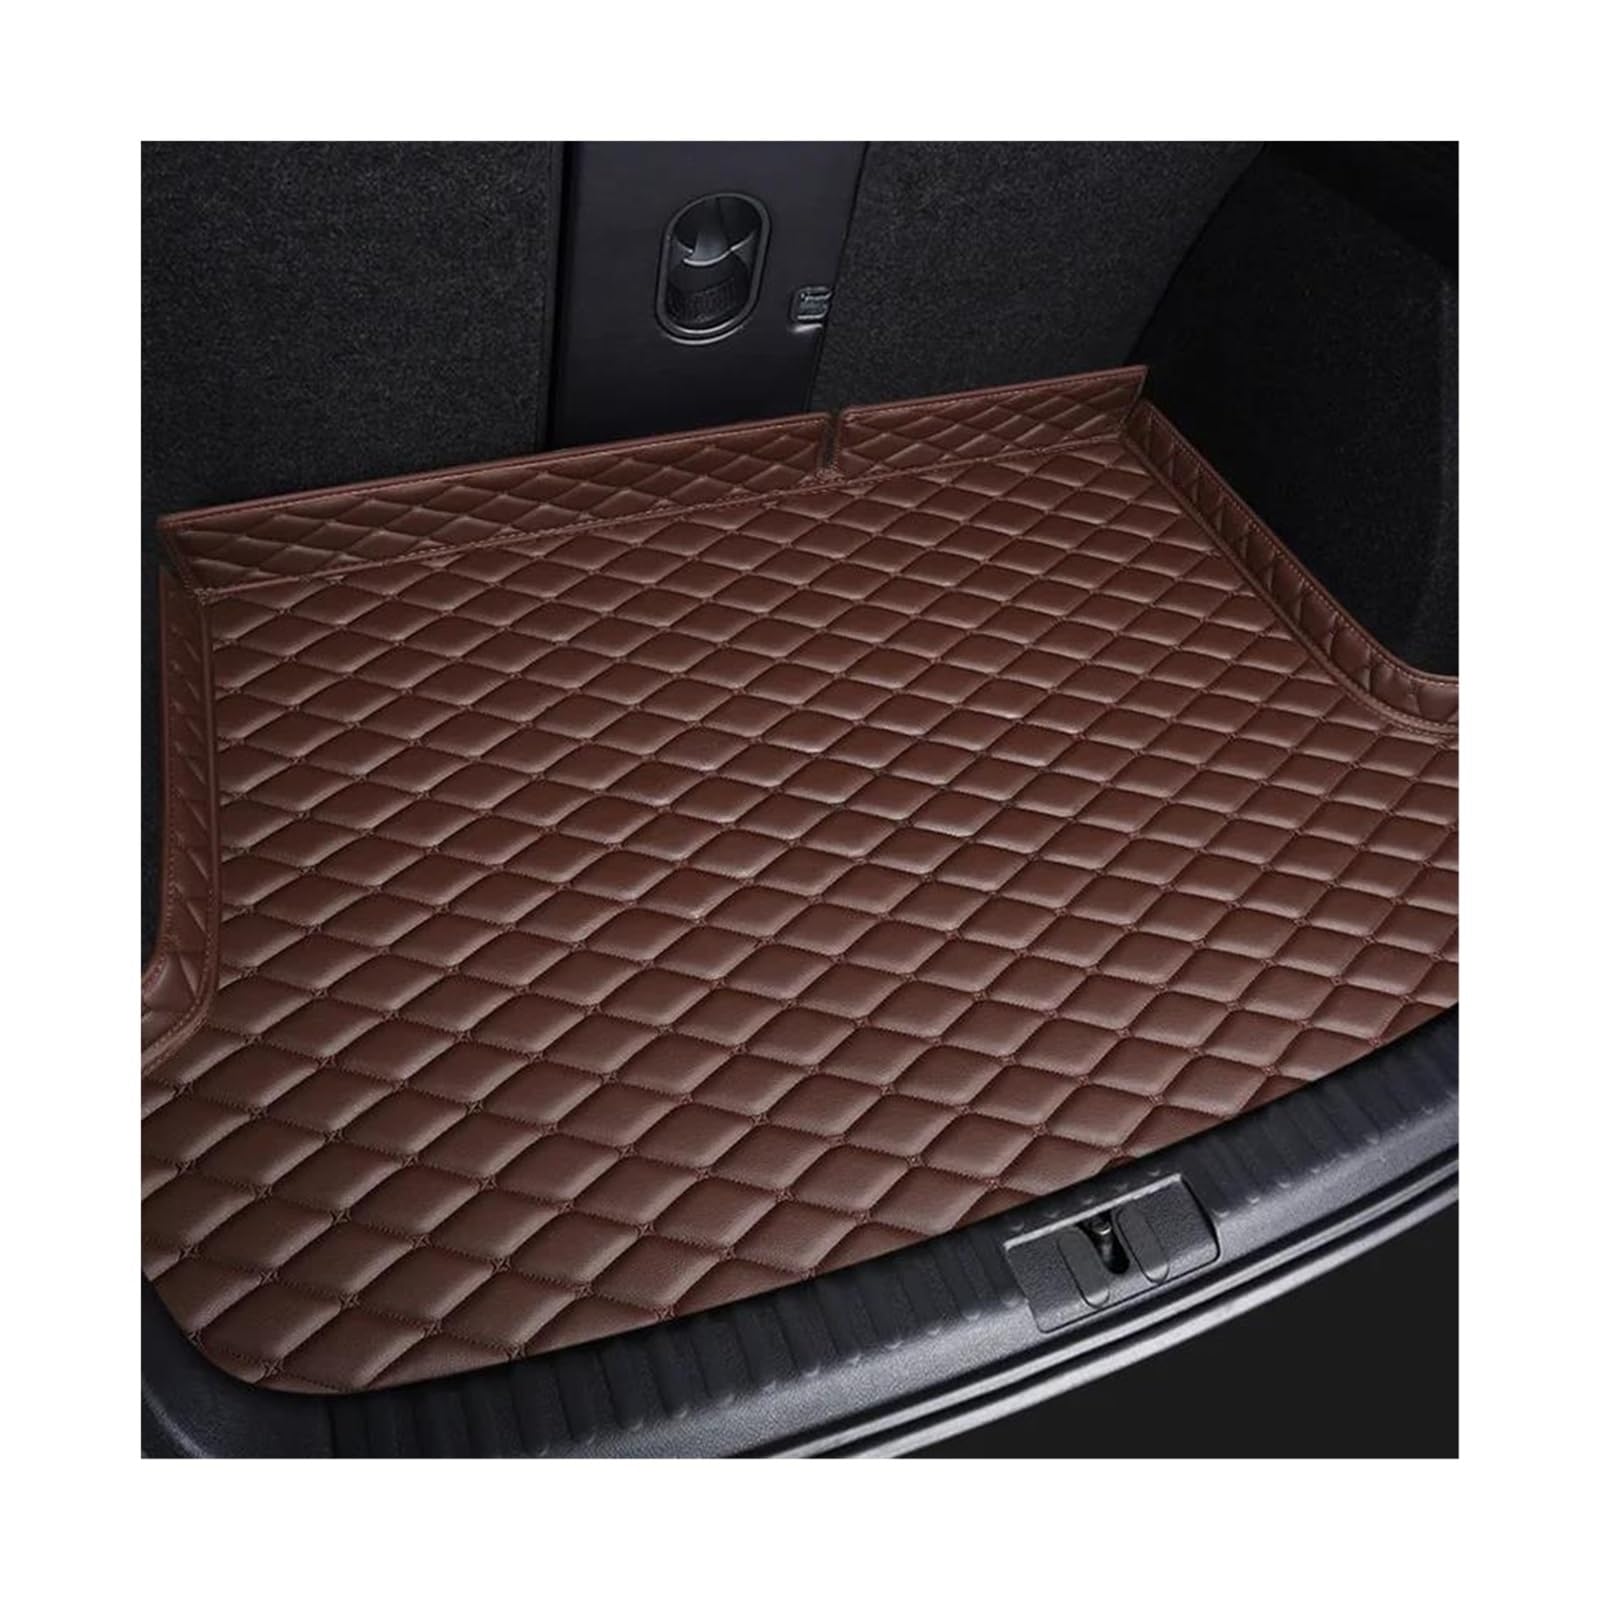 Kofferraummatten Autoteppich-Innenausstattungsdetails Zubehör Für B&MW F01 7er E65 E66 E68 F02 G11 G12 Maßgefertigte Kofferraummatte Kofferraum Schutzmatte(Coffee) von ECZDDEFS